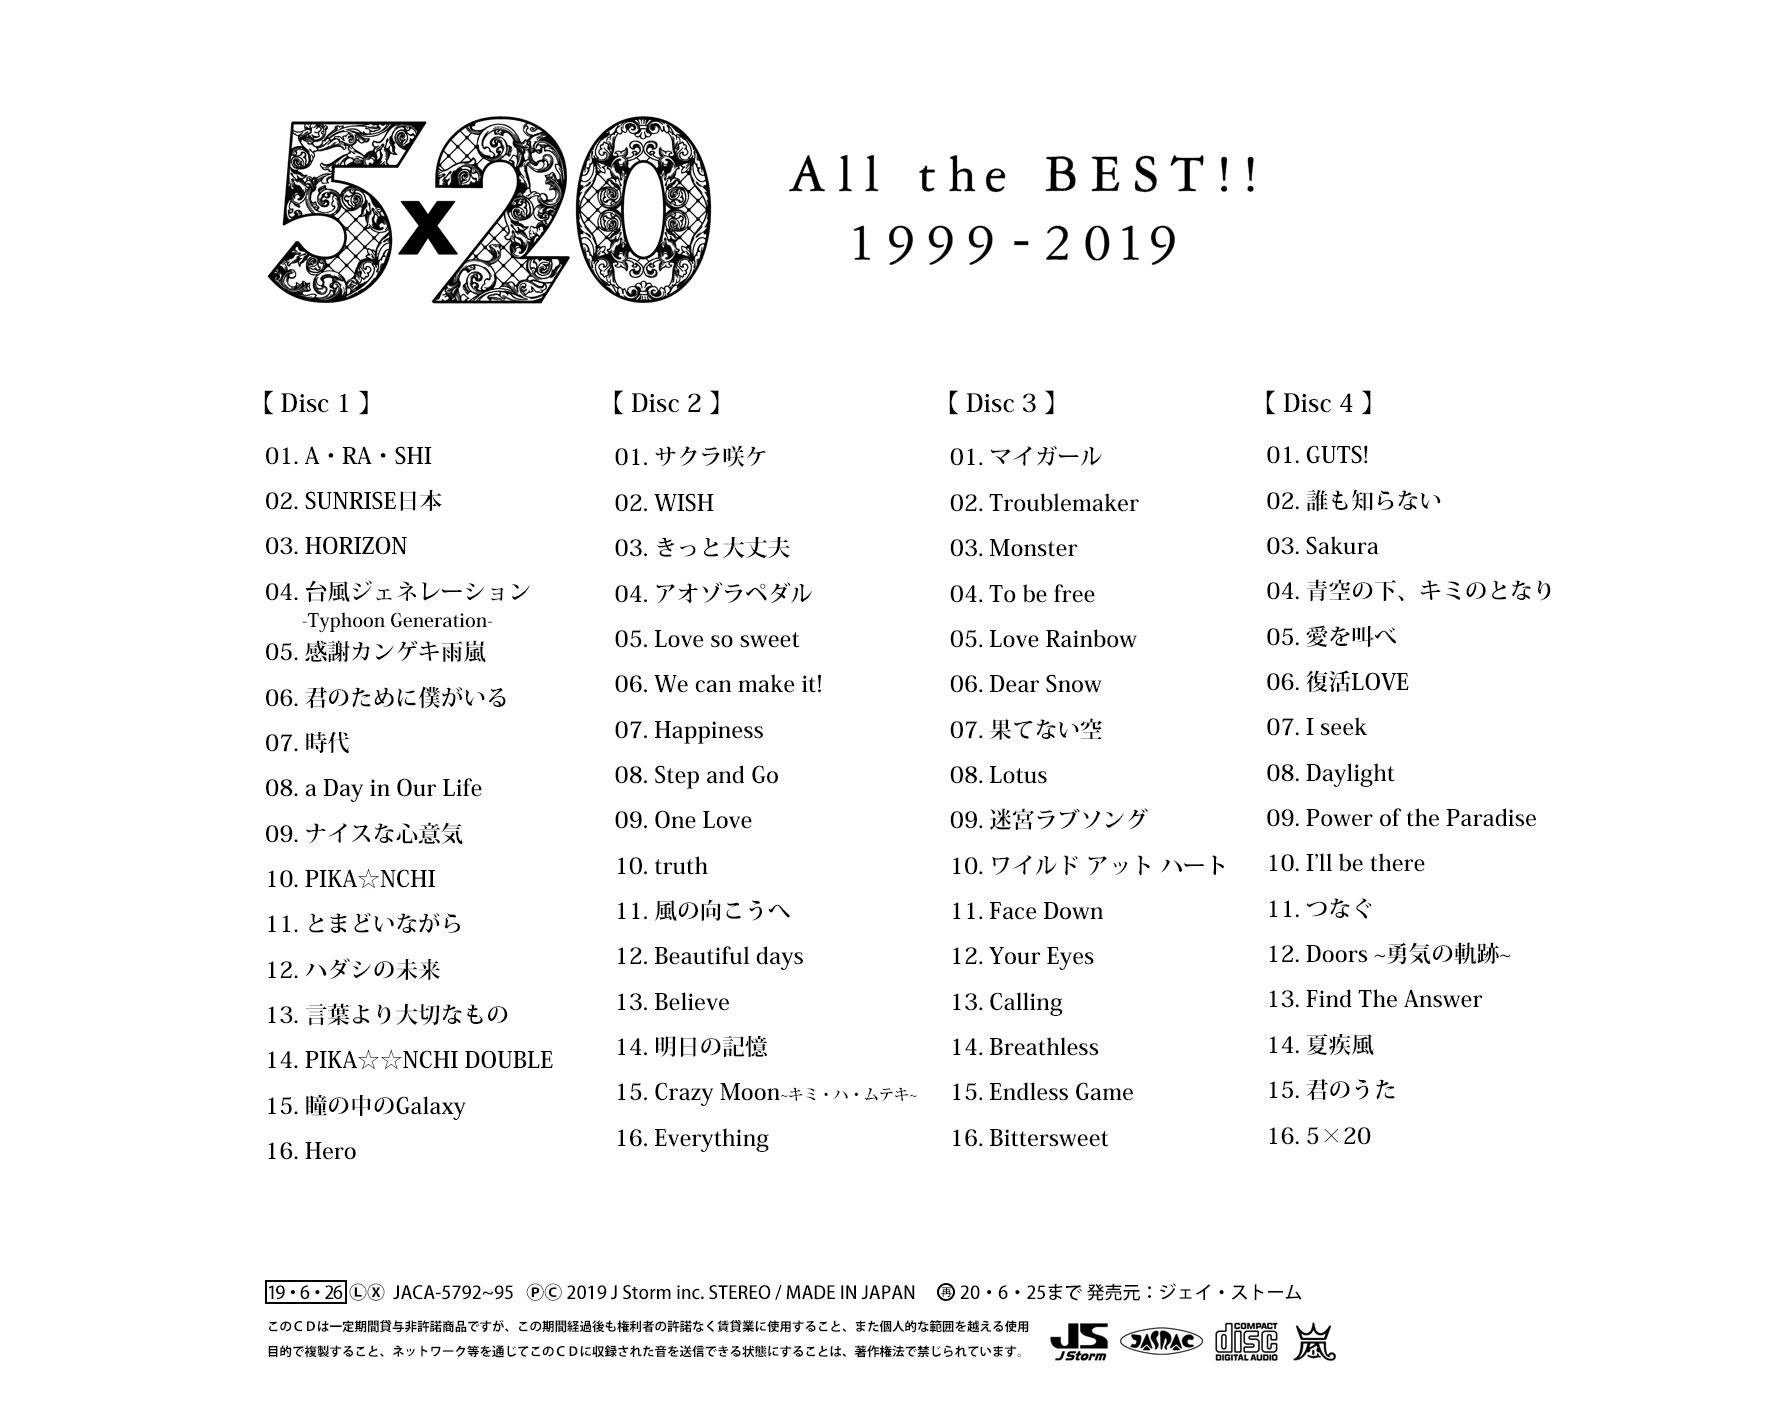 嵐 / 5×20 All the BEST!! 1999-2019